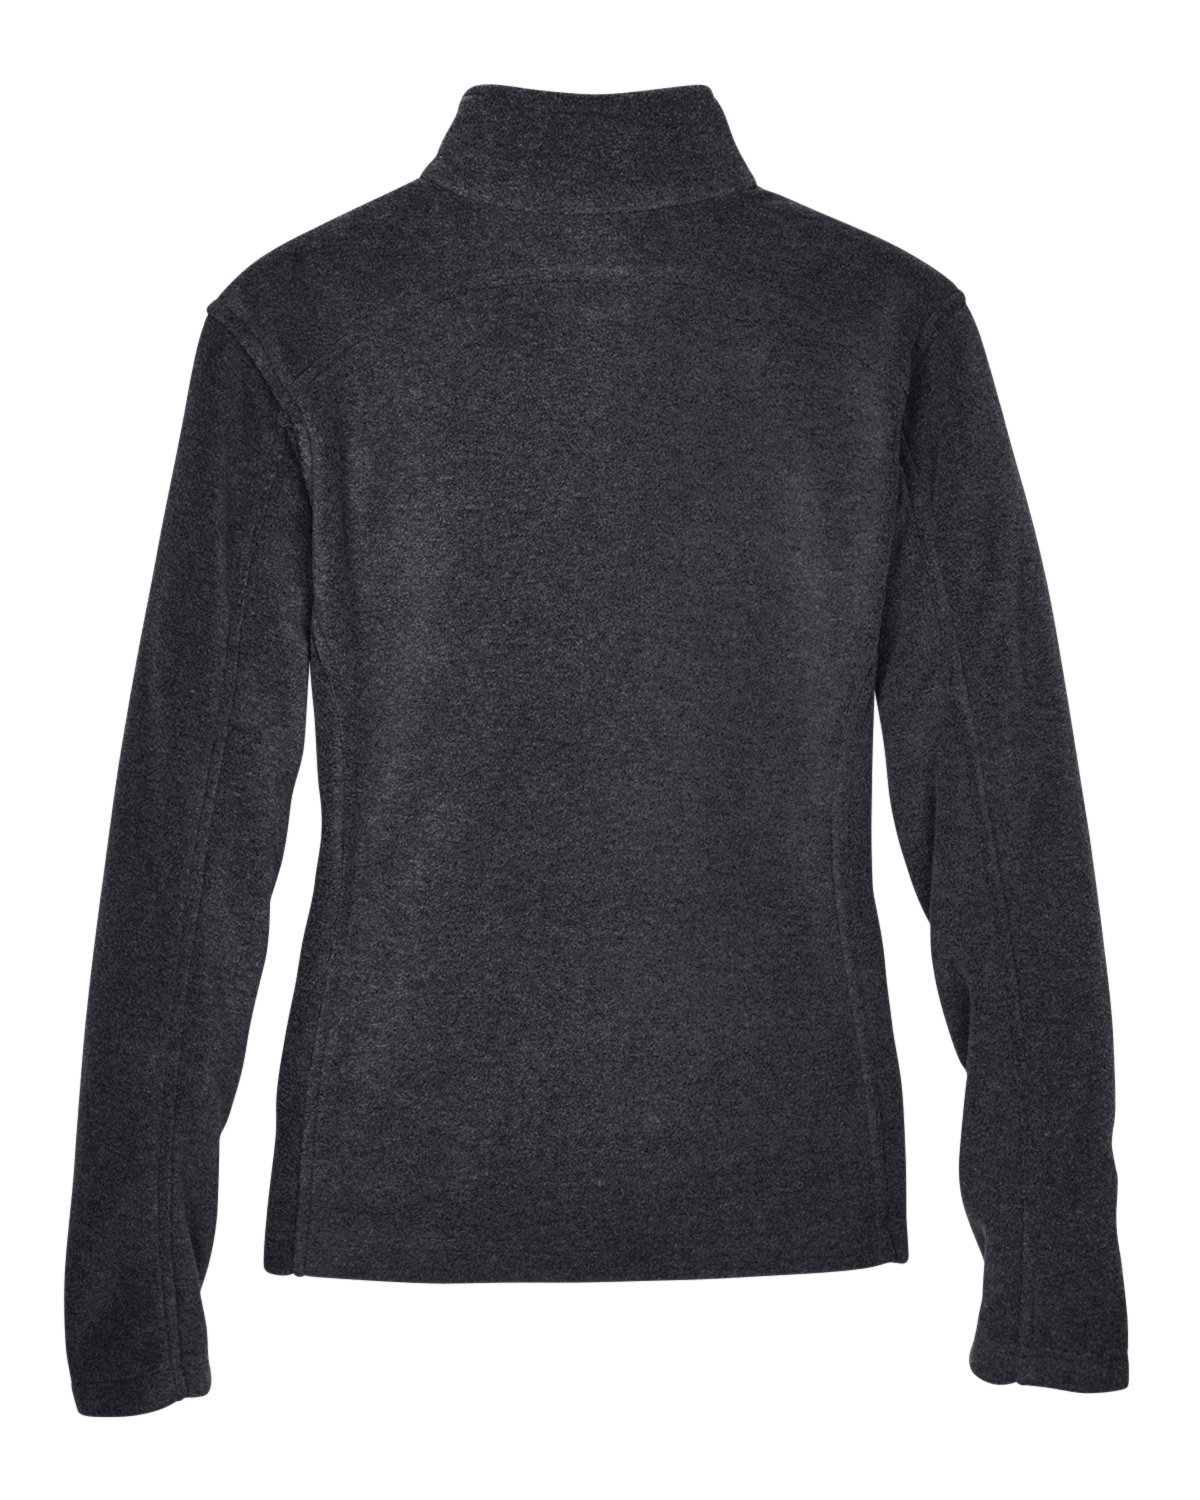 CORE365 Ladies' Journey Fleece Jacket | Generic Site - Priced